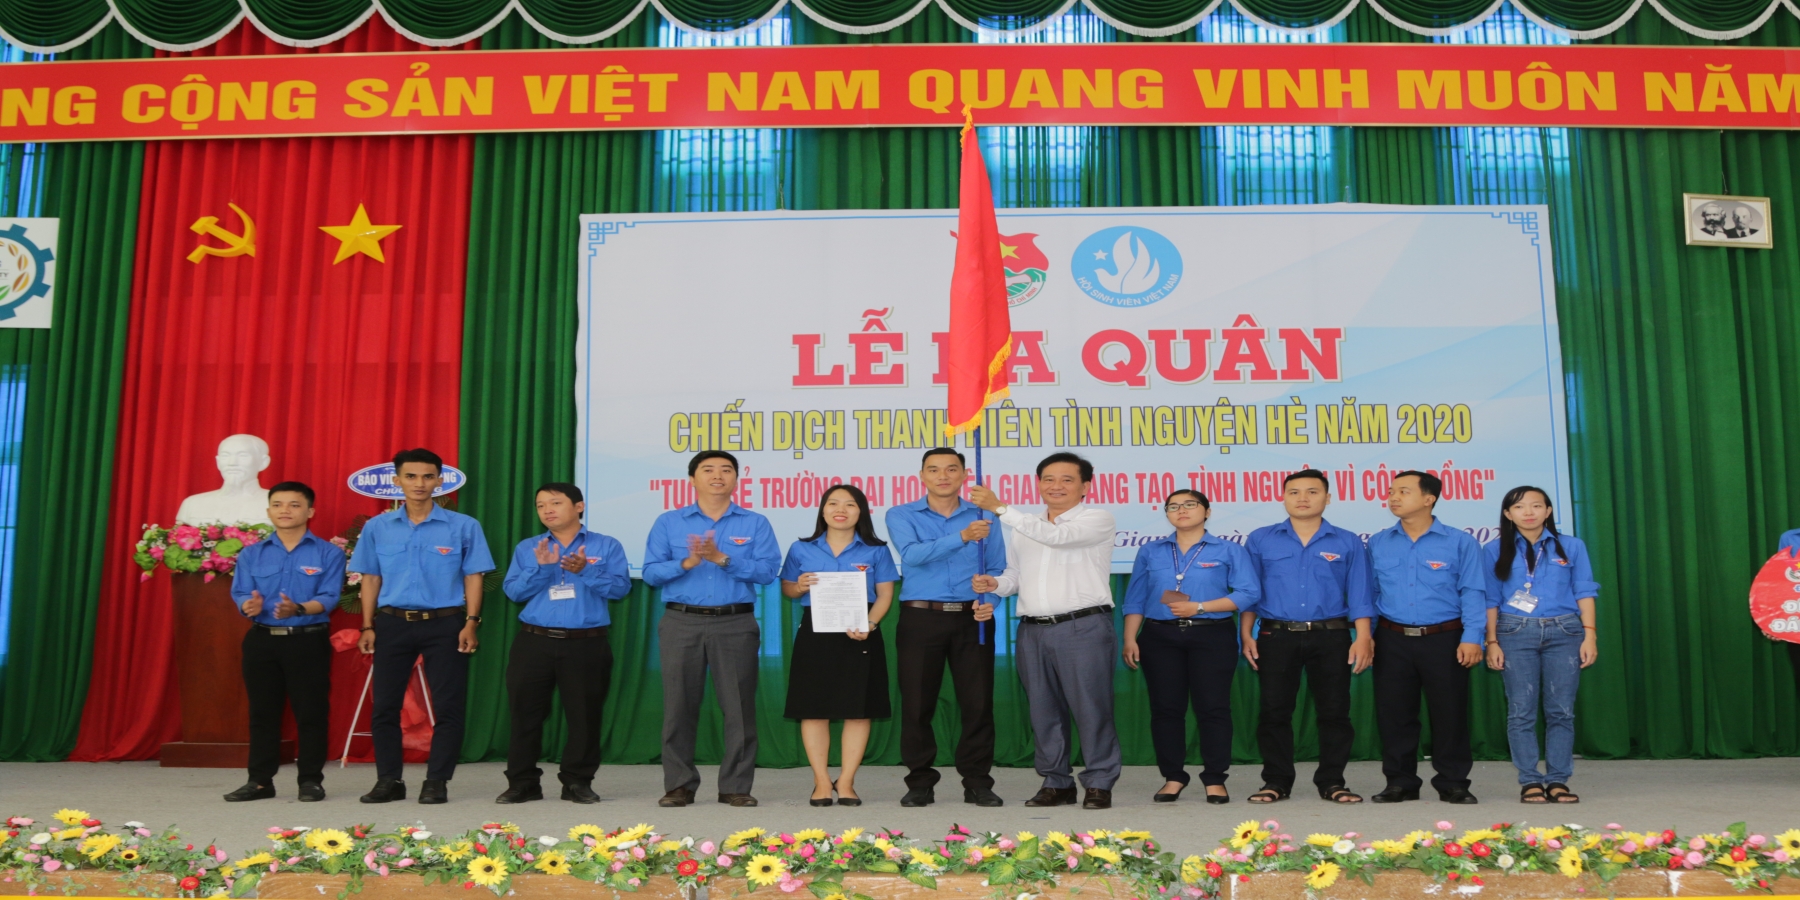 Tuổi trẻ Trường Đại học Kiên Giang sáng tạo, tình nguyện vì cộng đồng